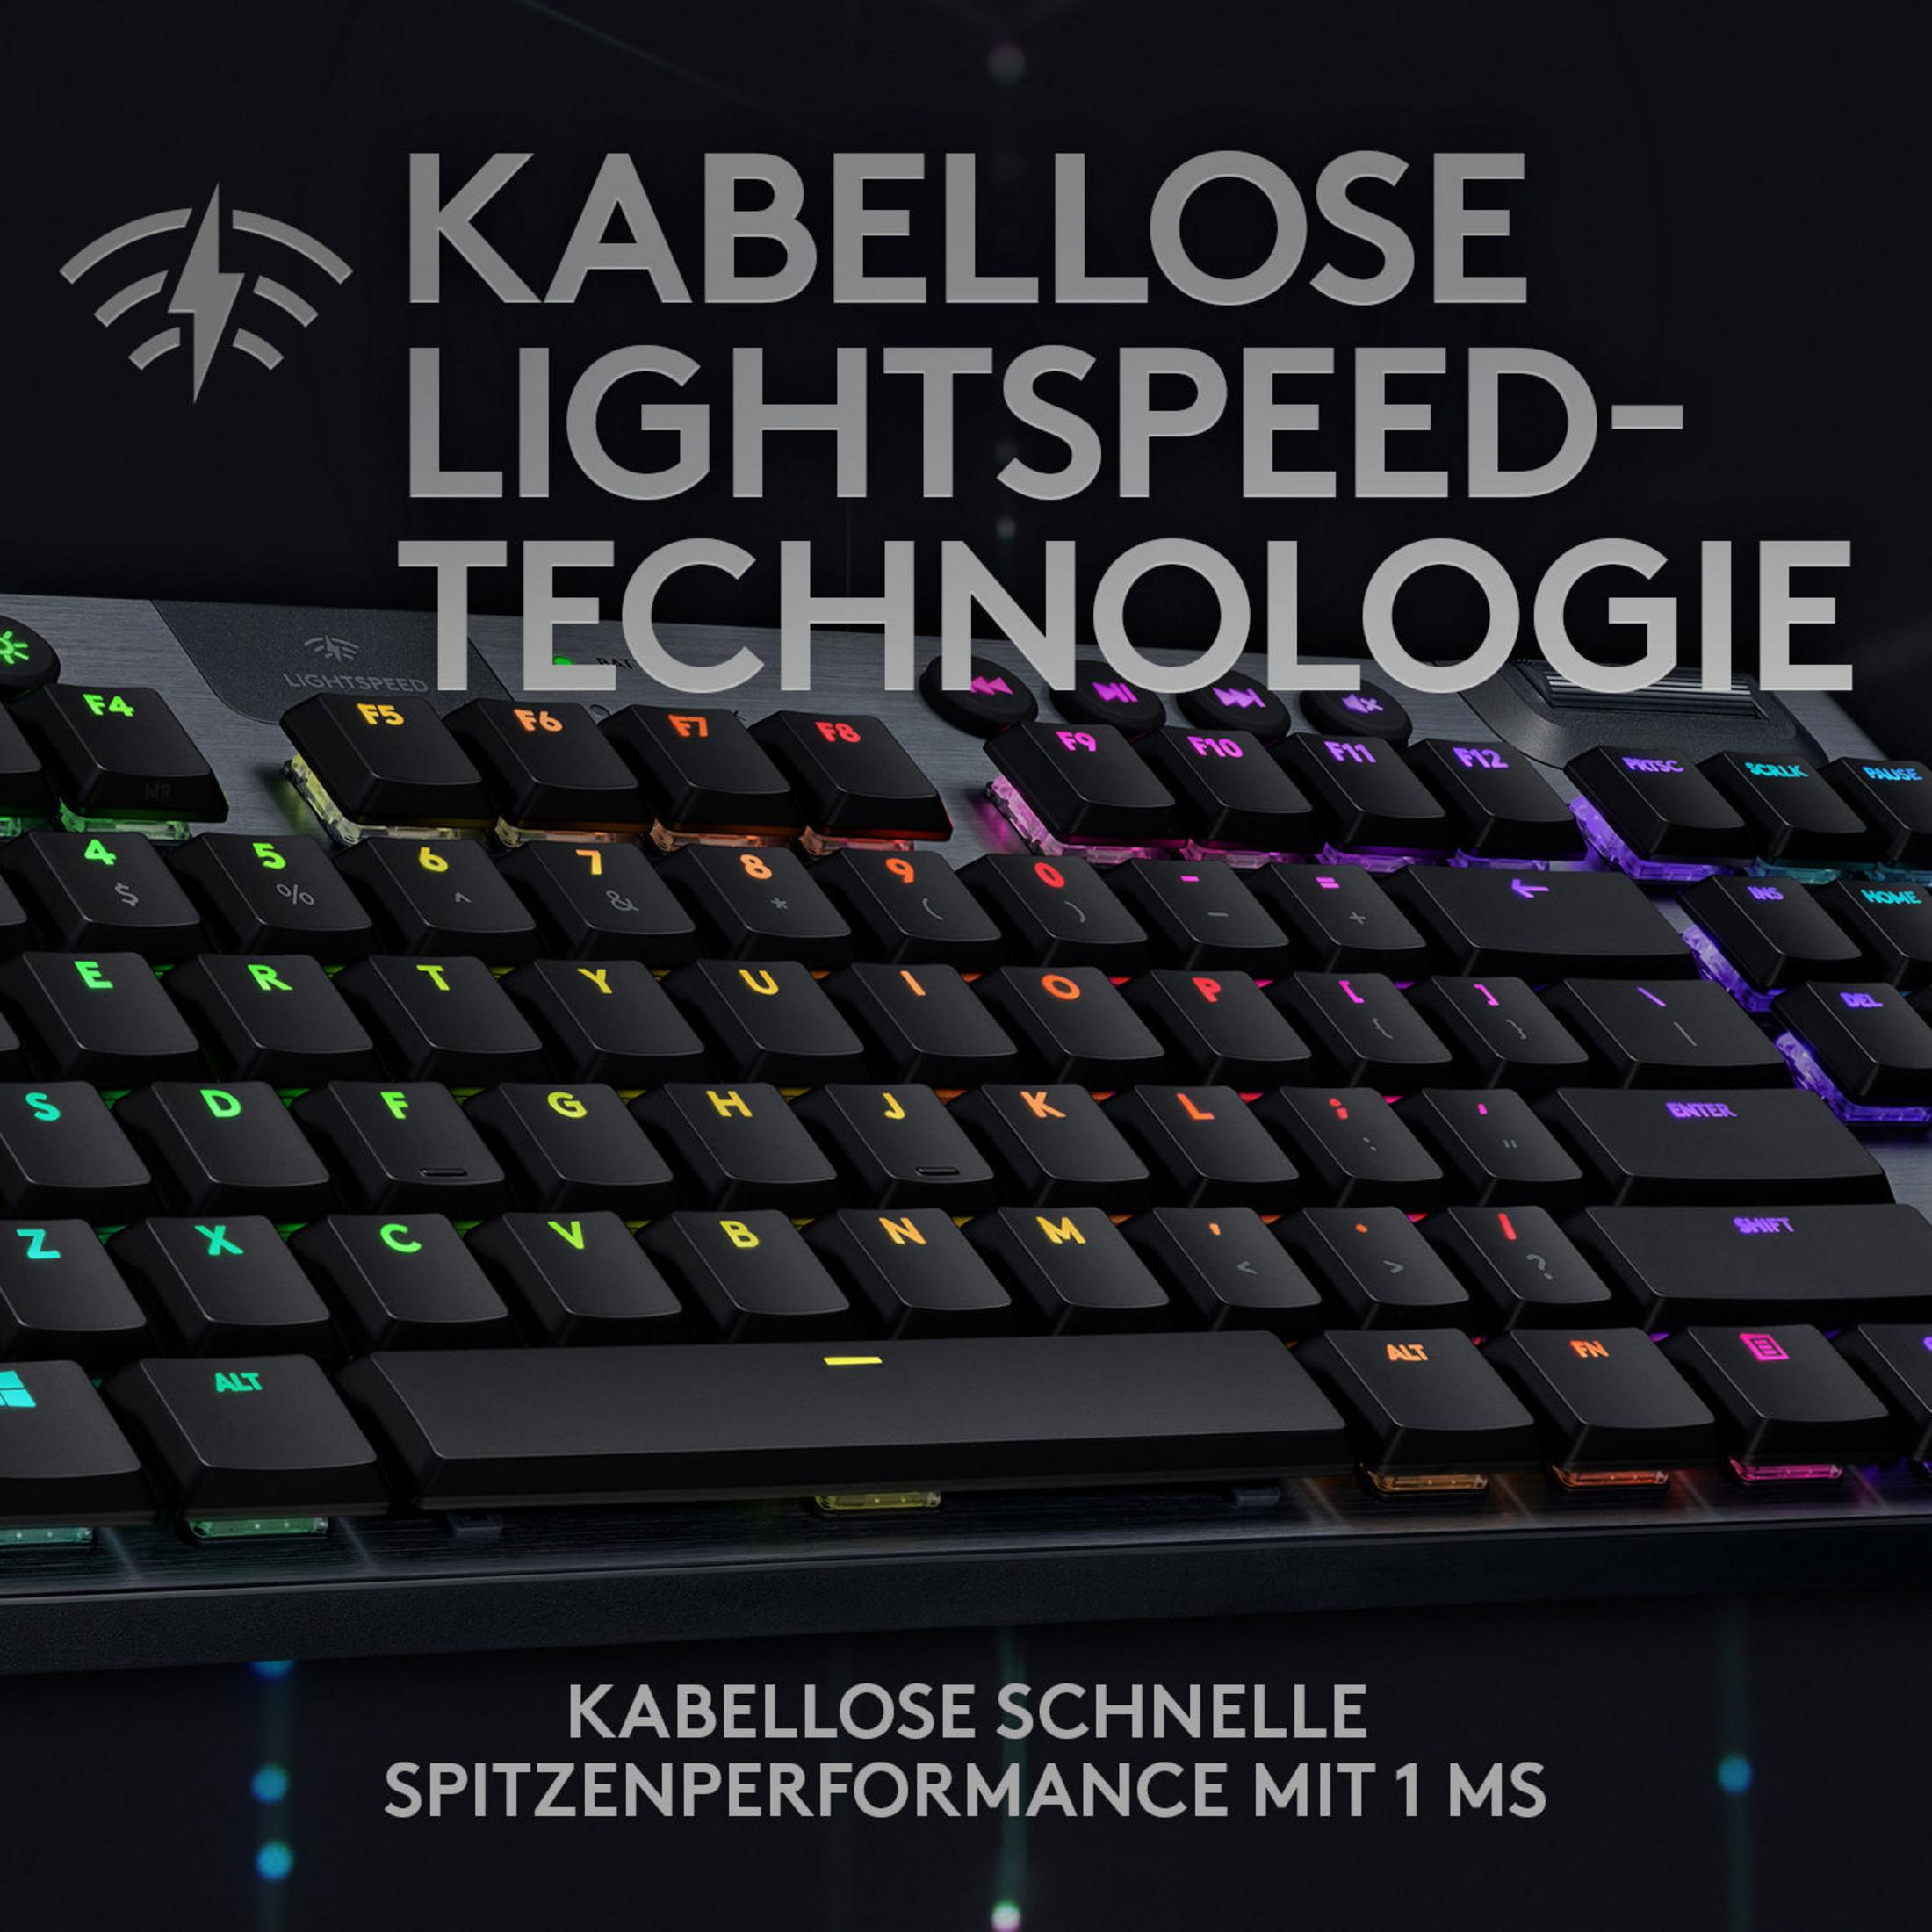 LIGHTSPEED TKL 920-009513 LOGITECH G915 Tastatur, Gaming RGB LINEAR, Mechanisch